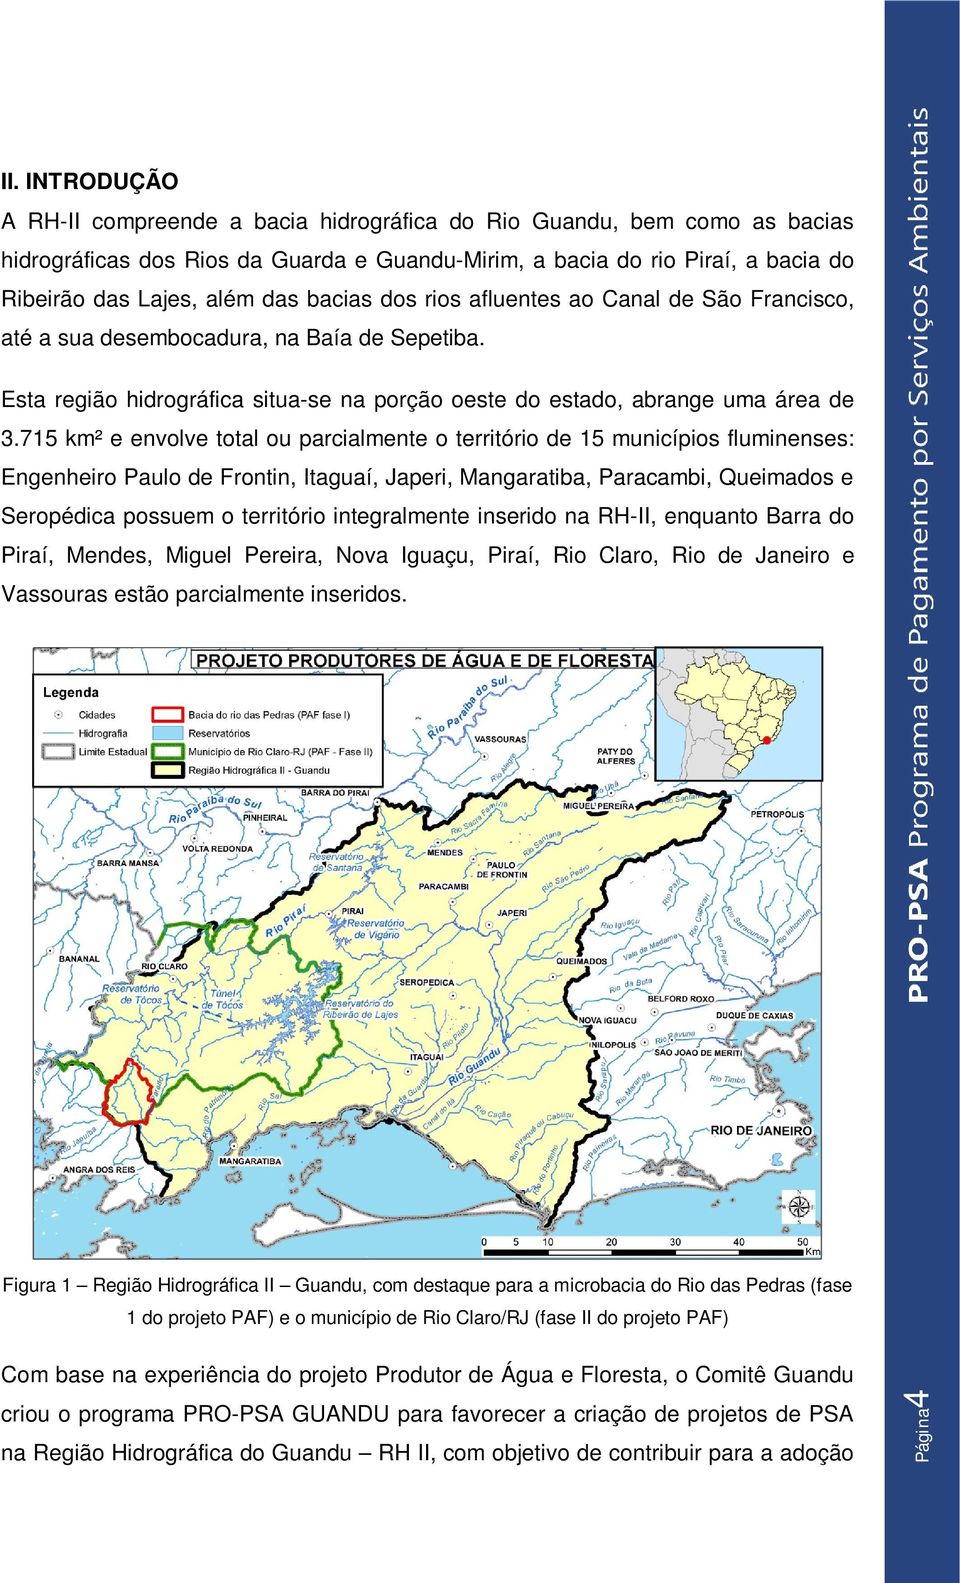 715 km² e envolve total ou parcialmente o território de 15 municípios fluminenses: Engenheiro Paulo de Frontin, Itaguaí, Japeri, Mangaratiba, Paracambi, Queimados e Seropédica possuem o território